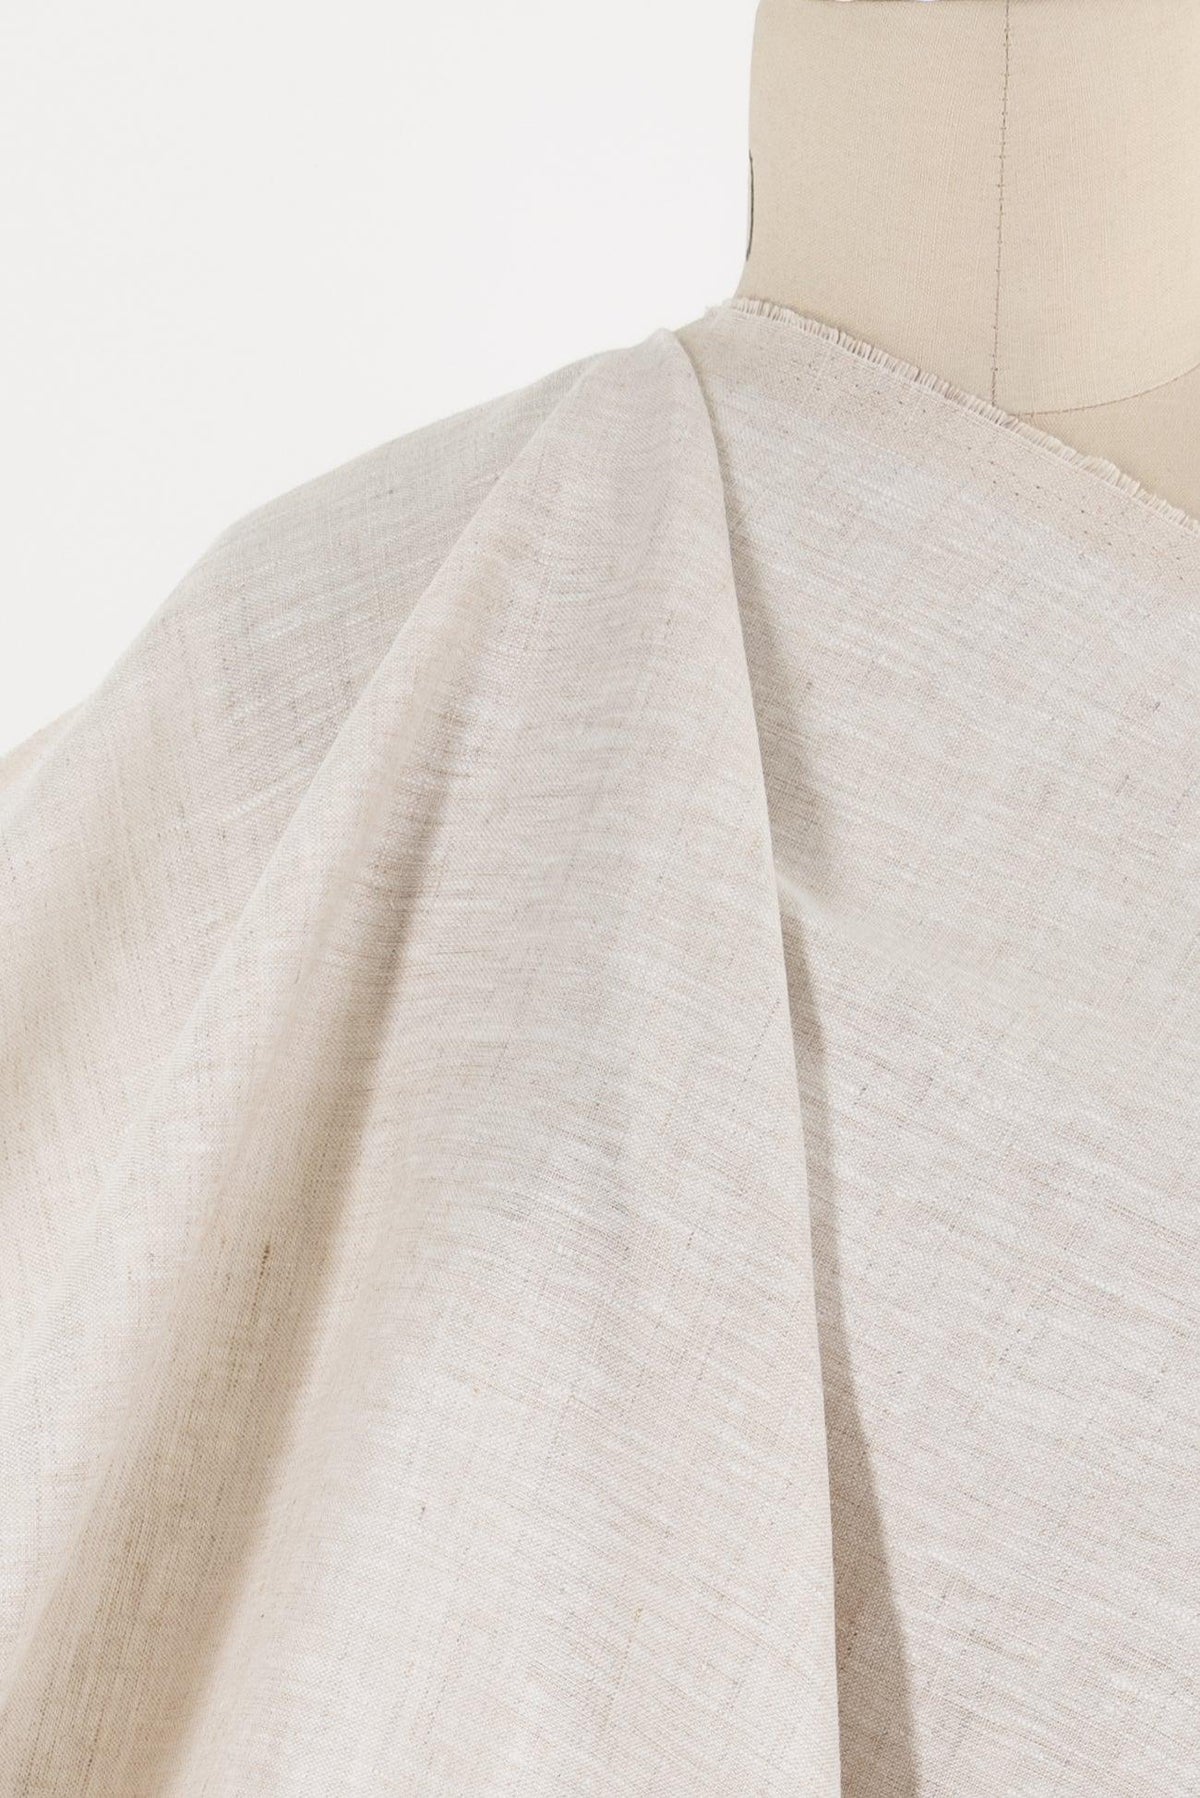 Parchment Euro Linen Woven - Marcy Tilton Fabrics